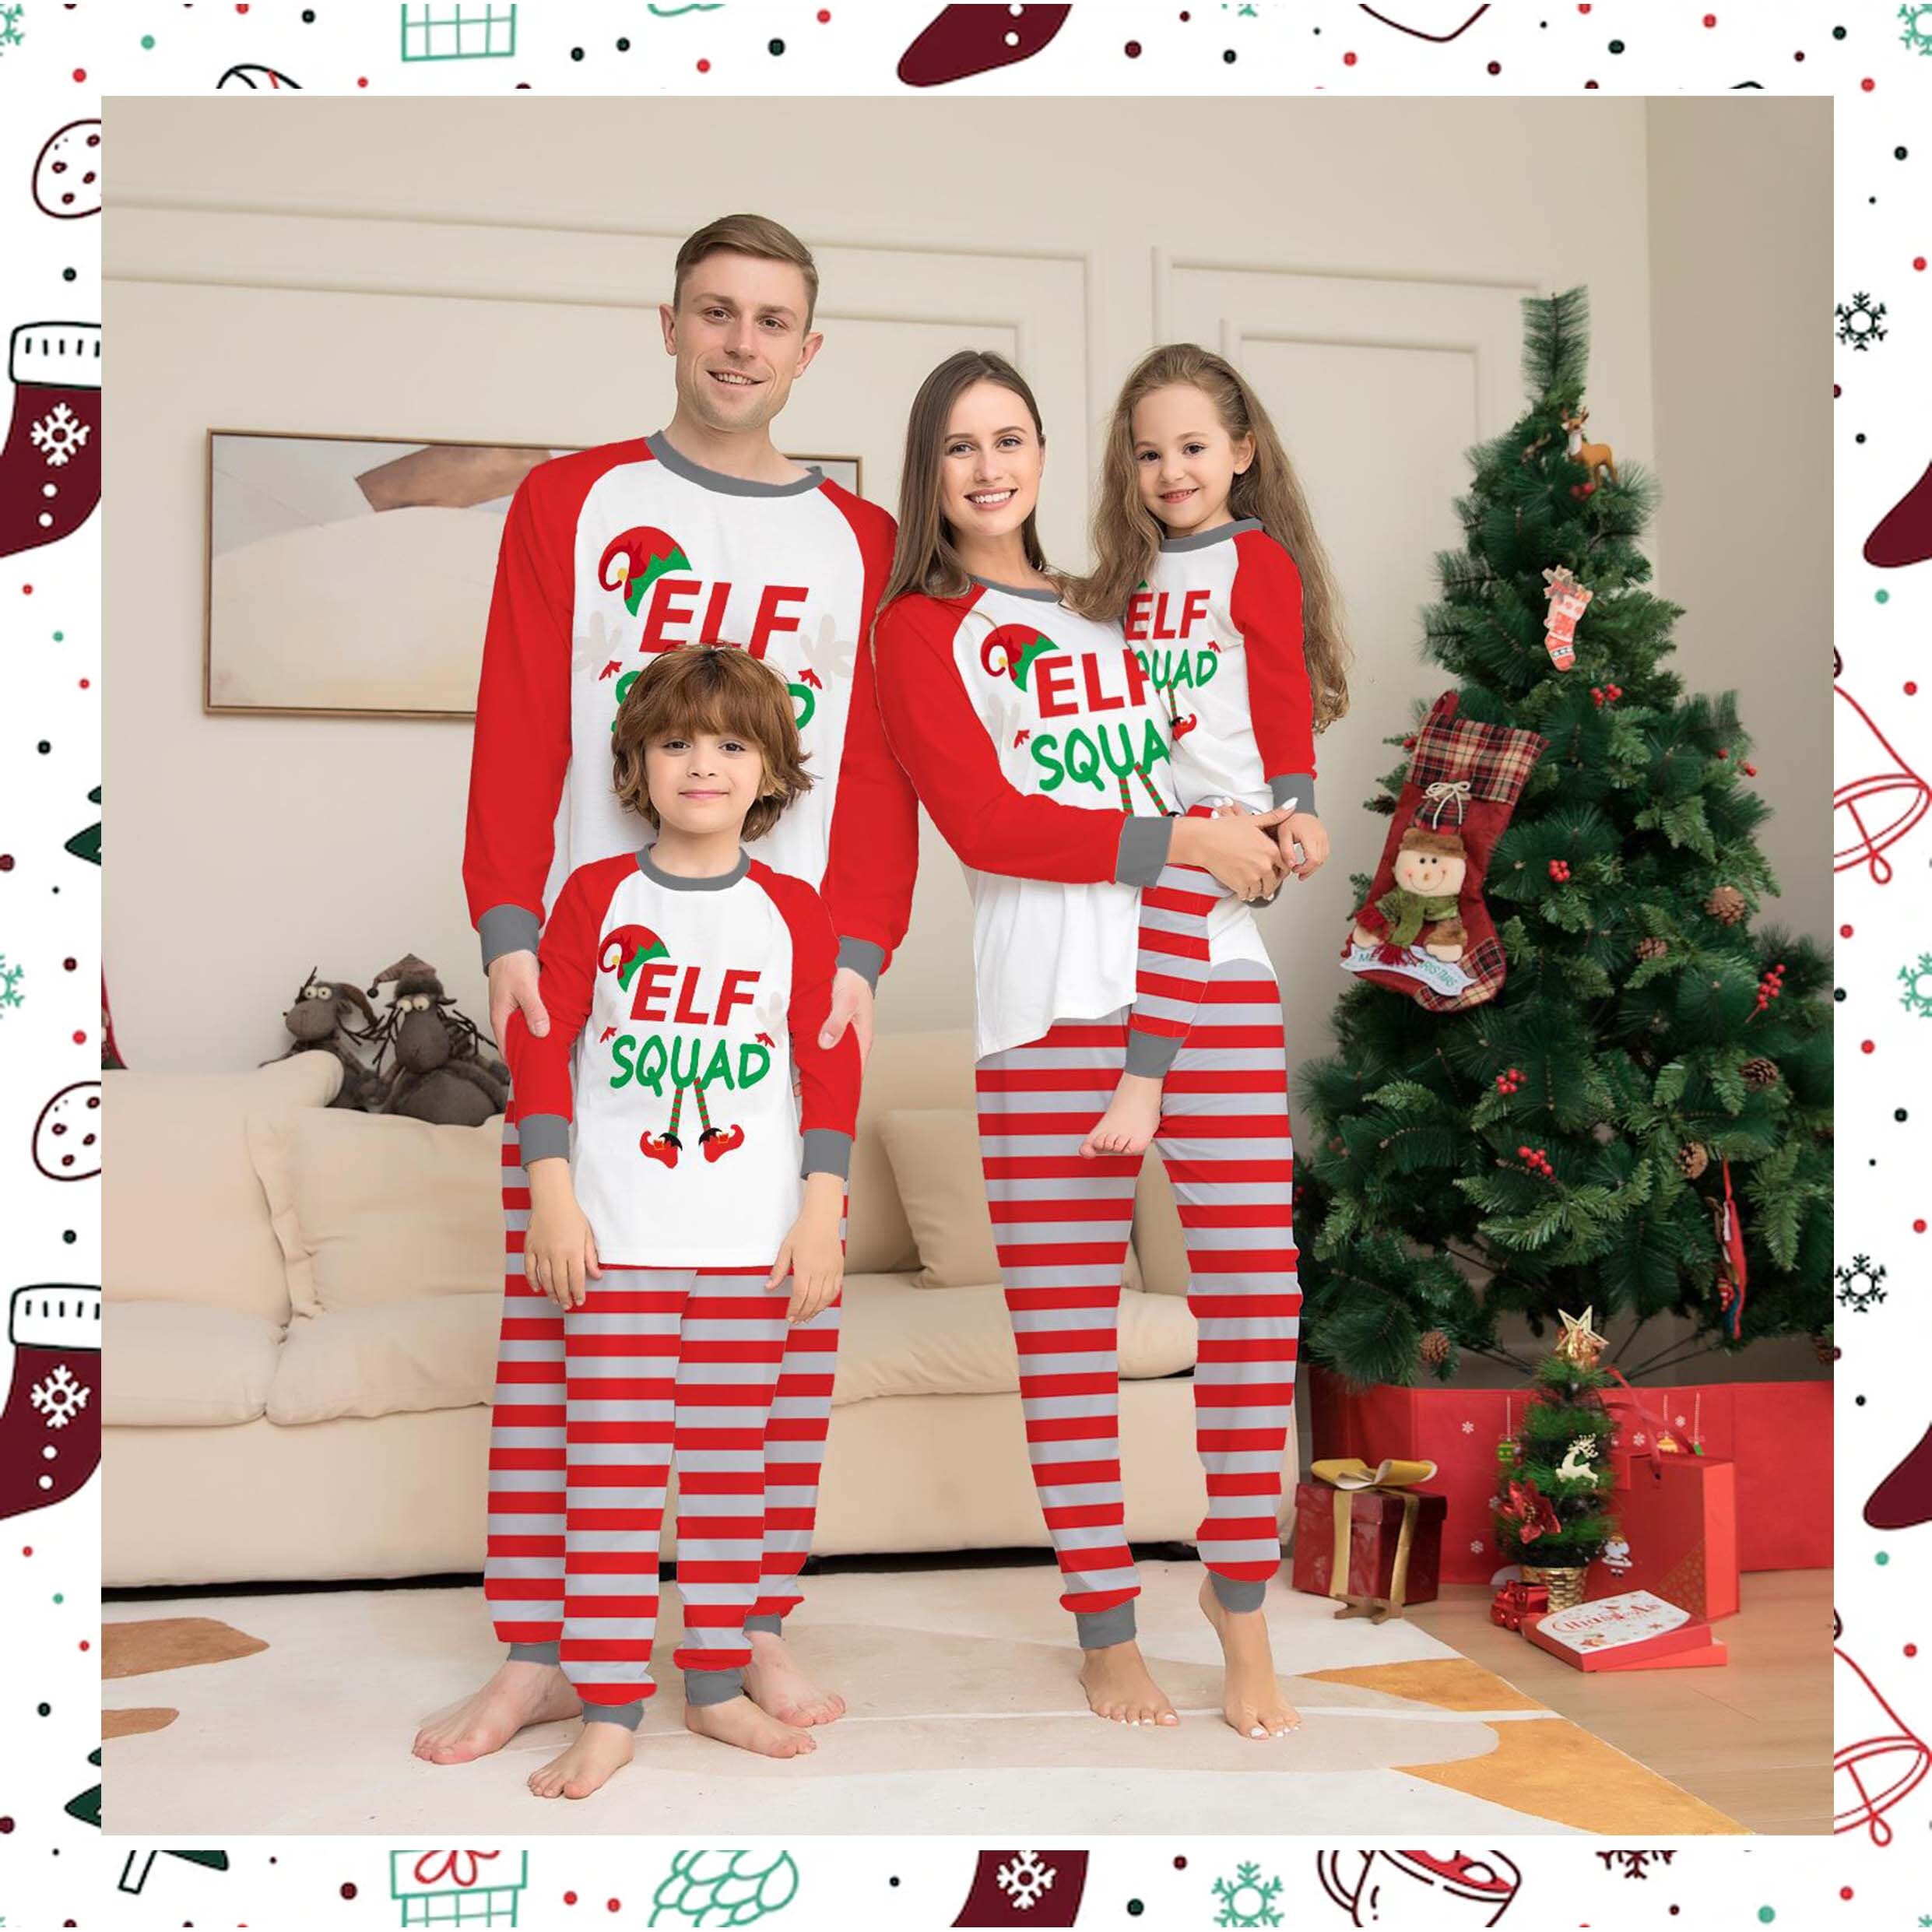 pigiama da elfi pigiama natalizio con cappello di Babbo Natale Pigiama natalizio elfo di famiglia personalizzato Abbigliamento Abbigliamento unisex bimbi Pigiami e vestaglie pigiama natalizio abbinato 